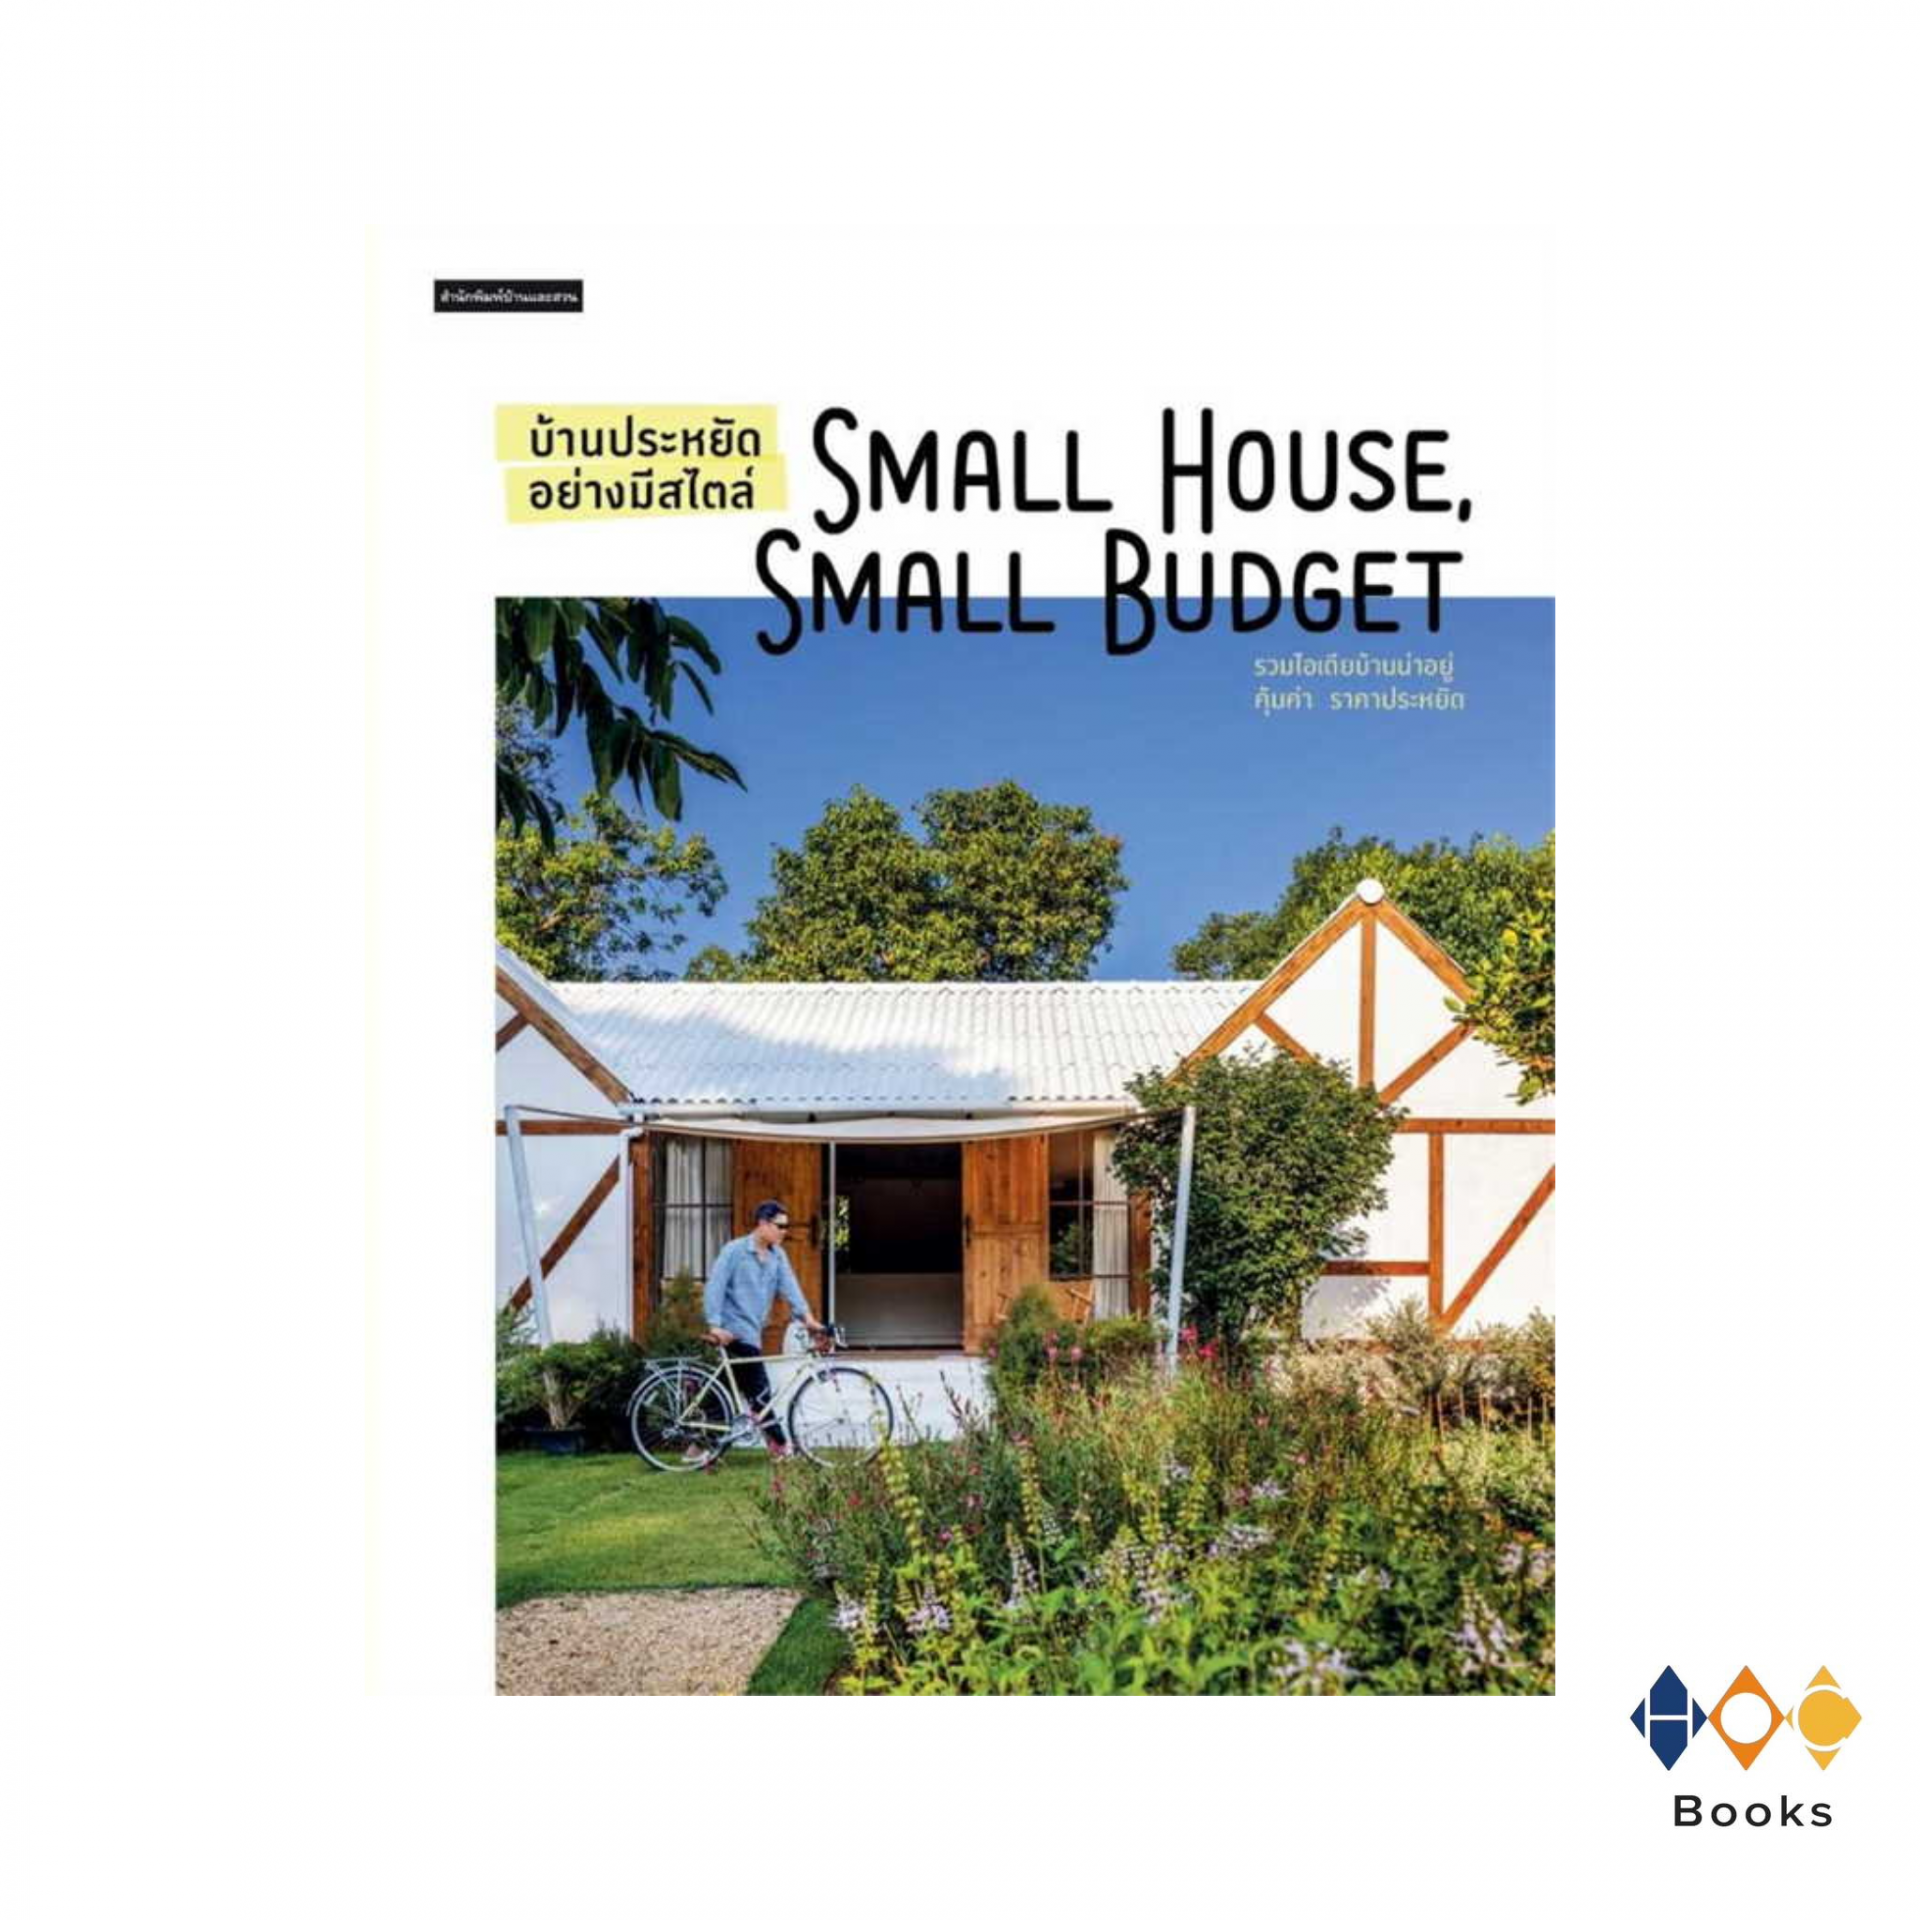 หนังสือ บ้านประหยัดอย่างมีสไตล์ Small House Small Budget